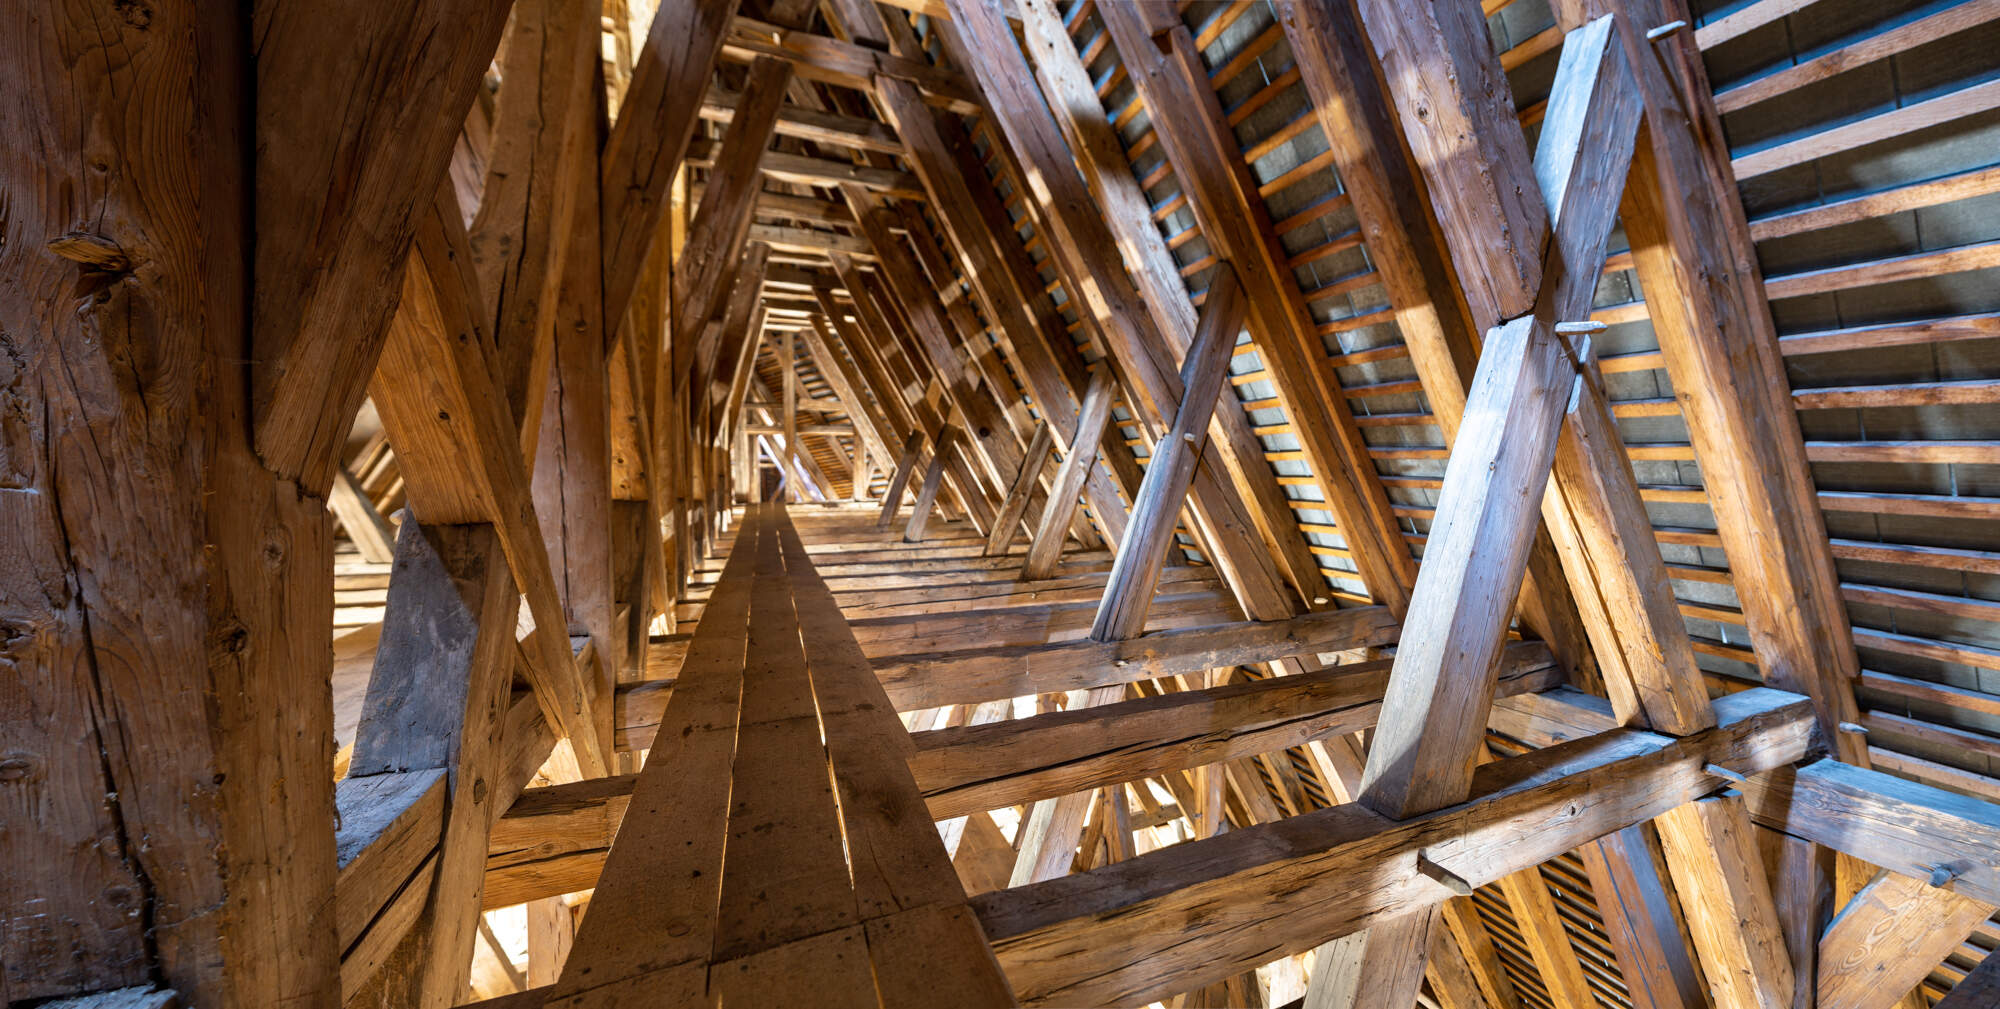 Auswechslung des 500 Jahre alten Dachstuhls